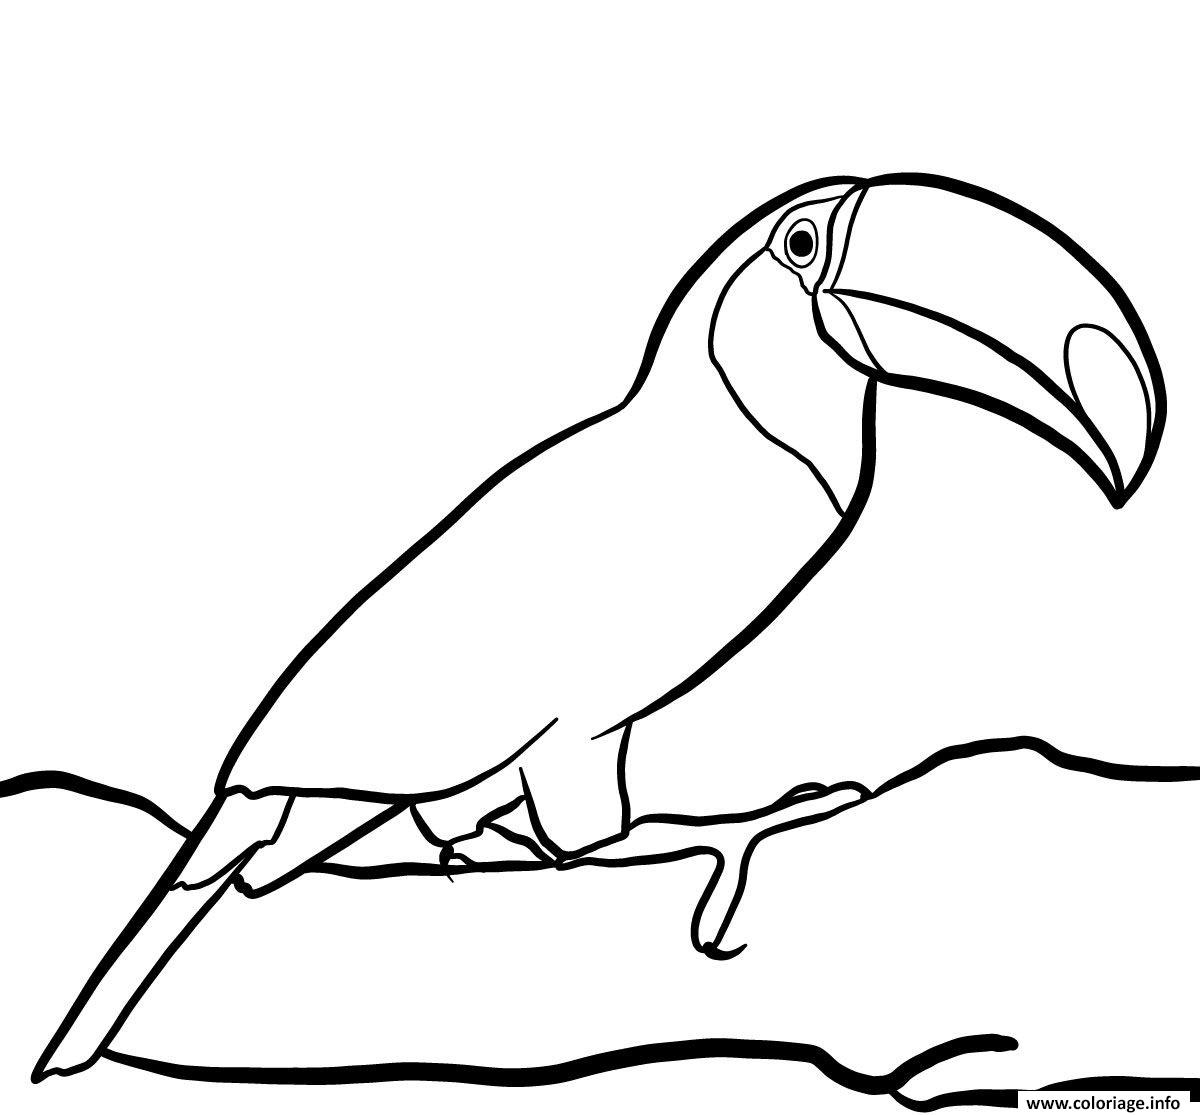 Coloriage Oiseau Toucan Toco Vit Dans La Foret Tropicale dedans Coloriage Oiseau